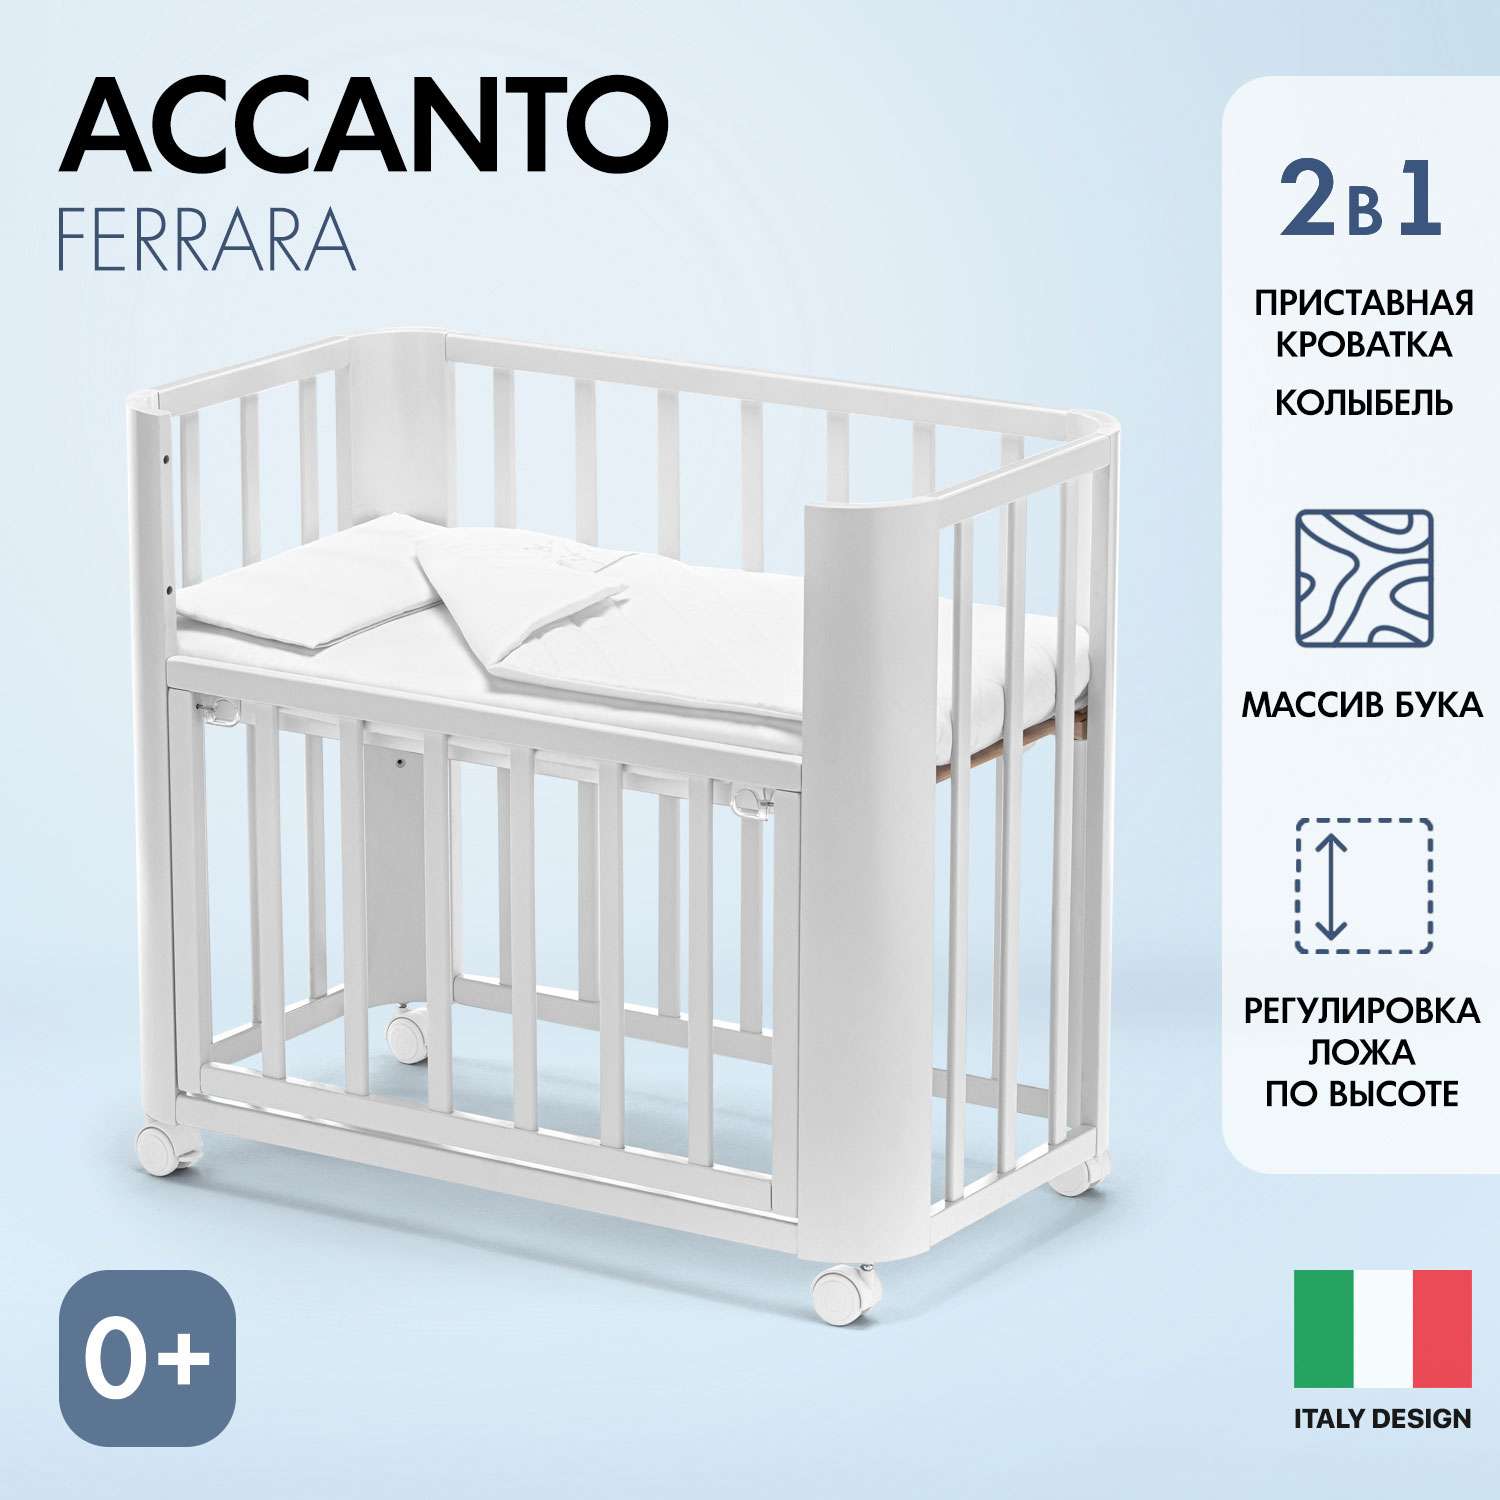 Кровать Nuovita Accanto Ferrara приставная Белый - фото 2